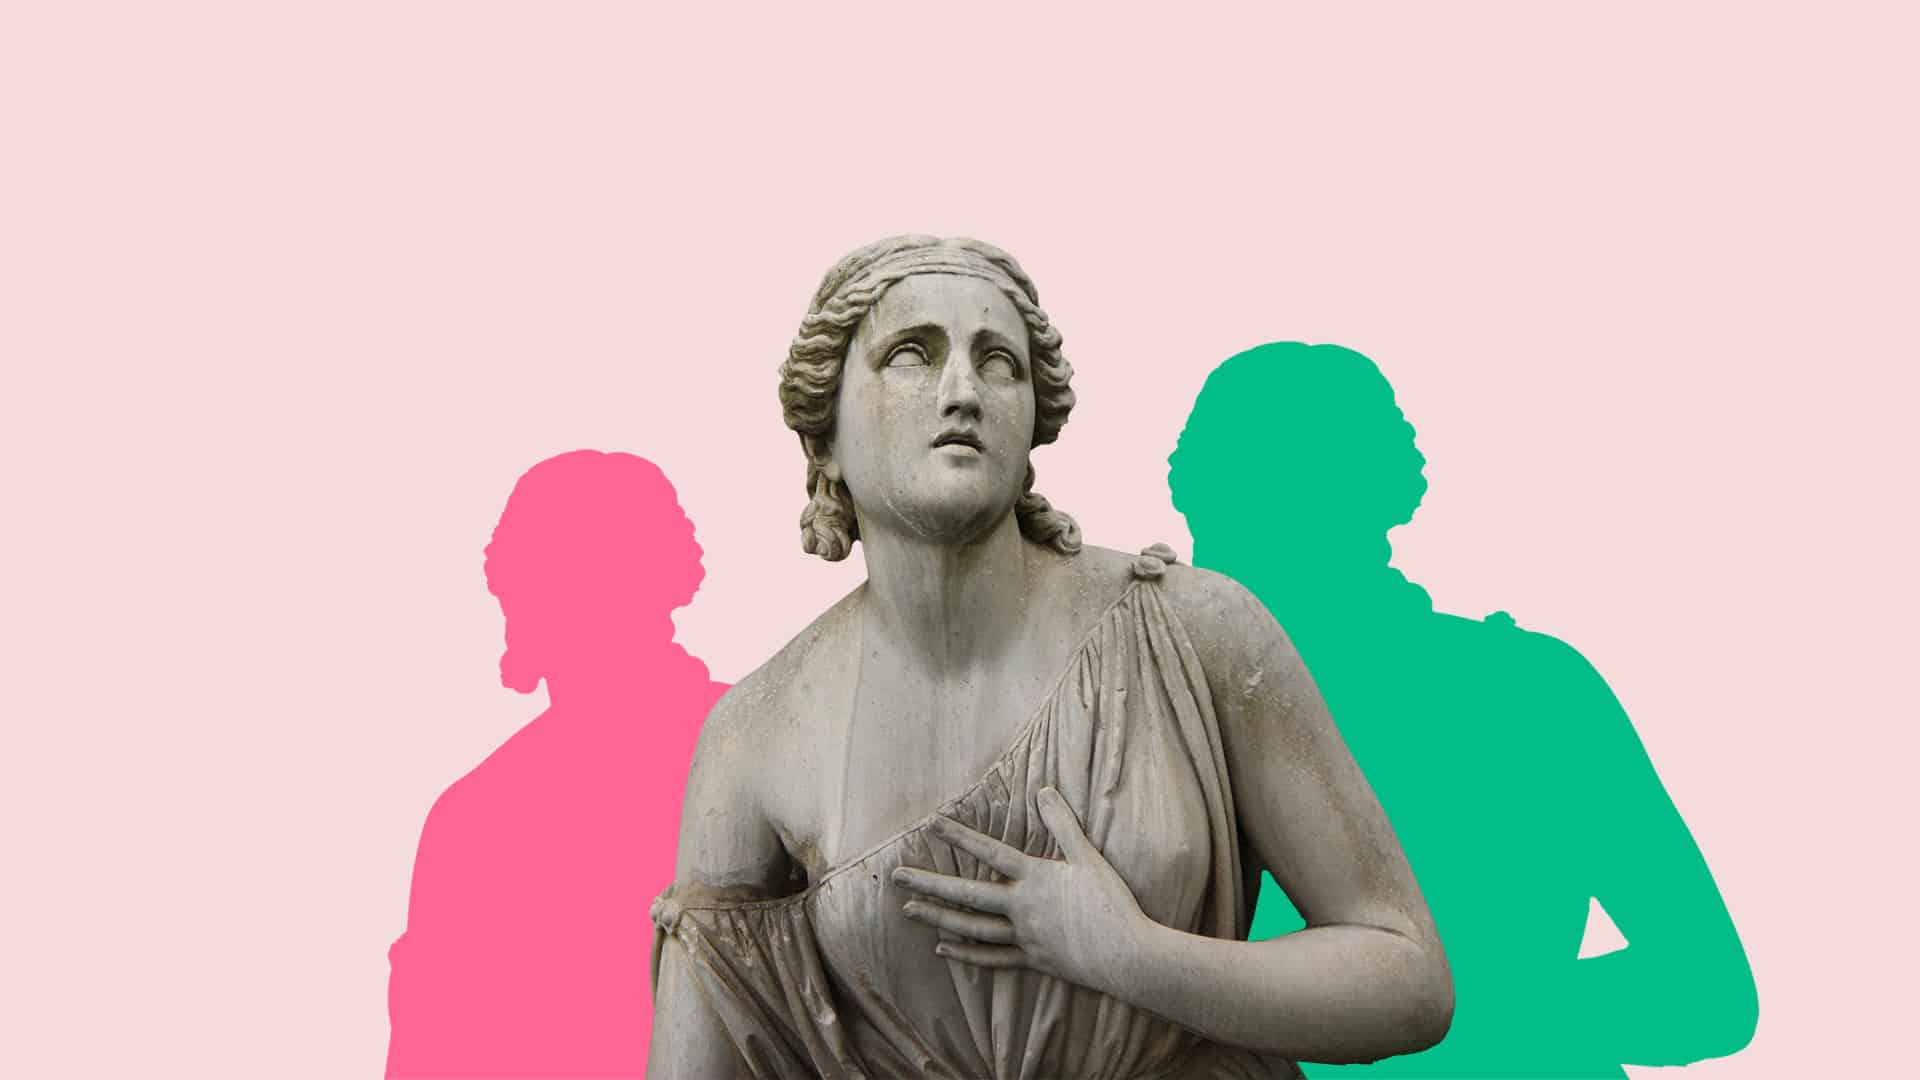 En kvinnlig staty med två siluetter i bakgrunden i färgerna rosa och grön